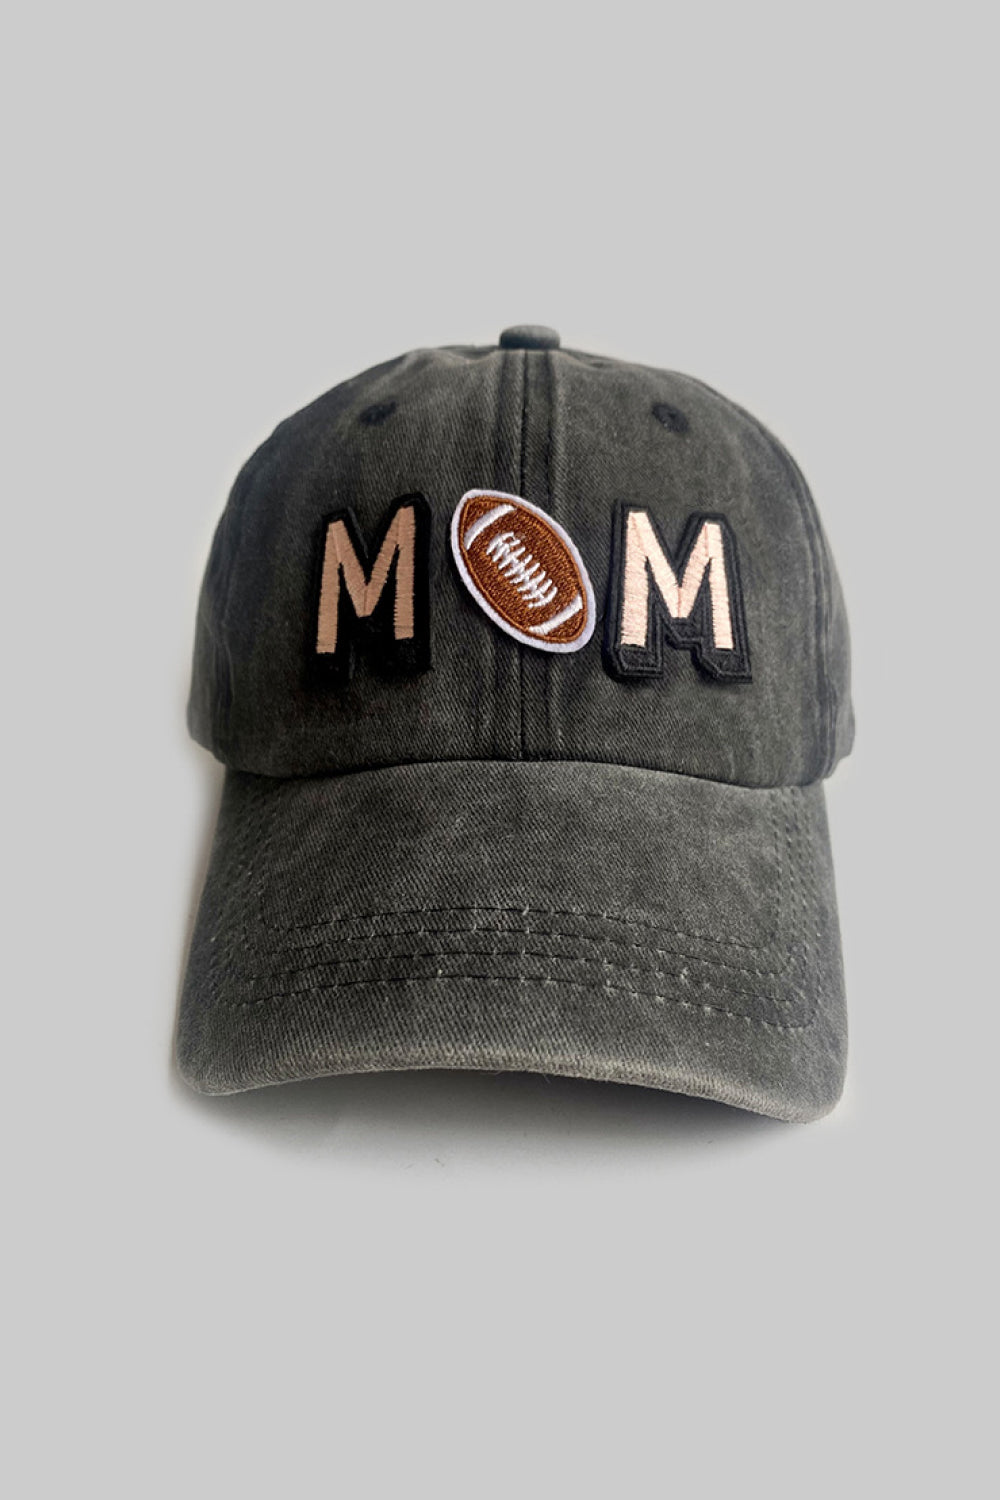 MOM Baseball Cap